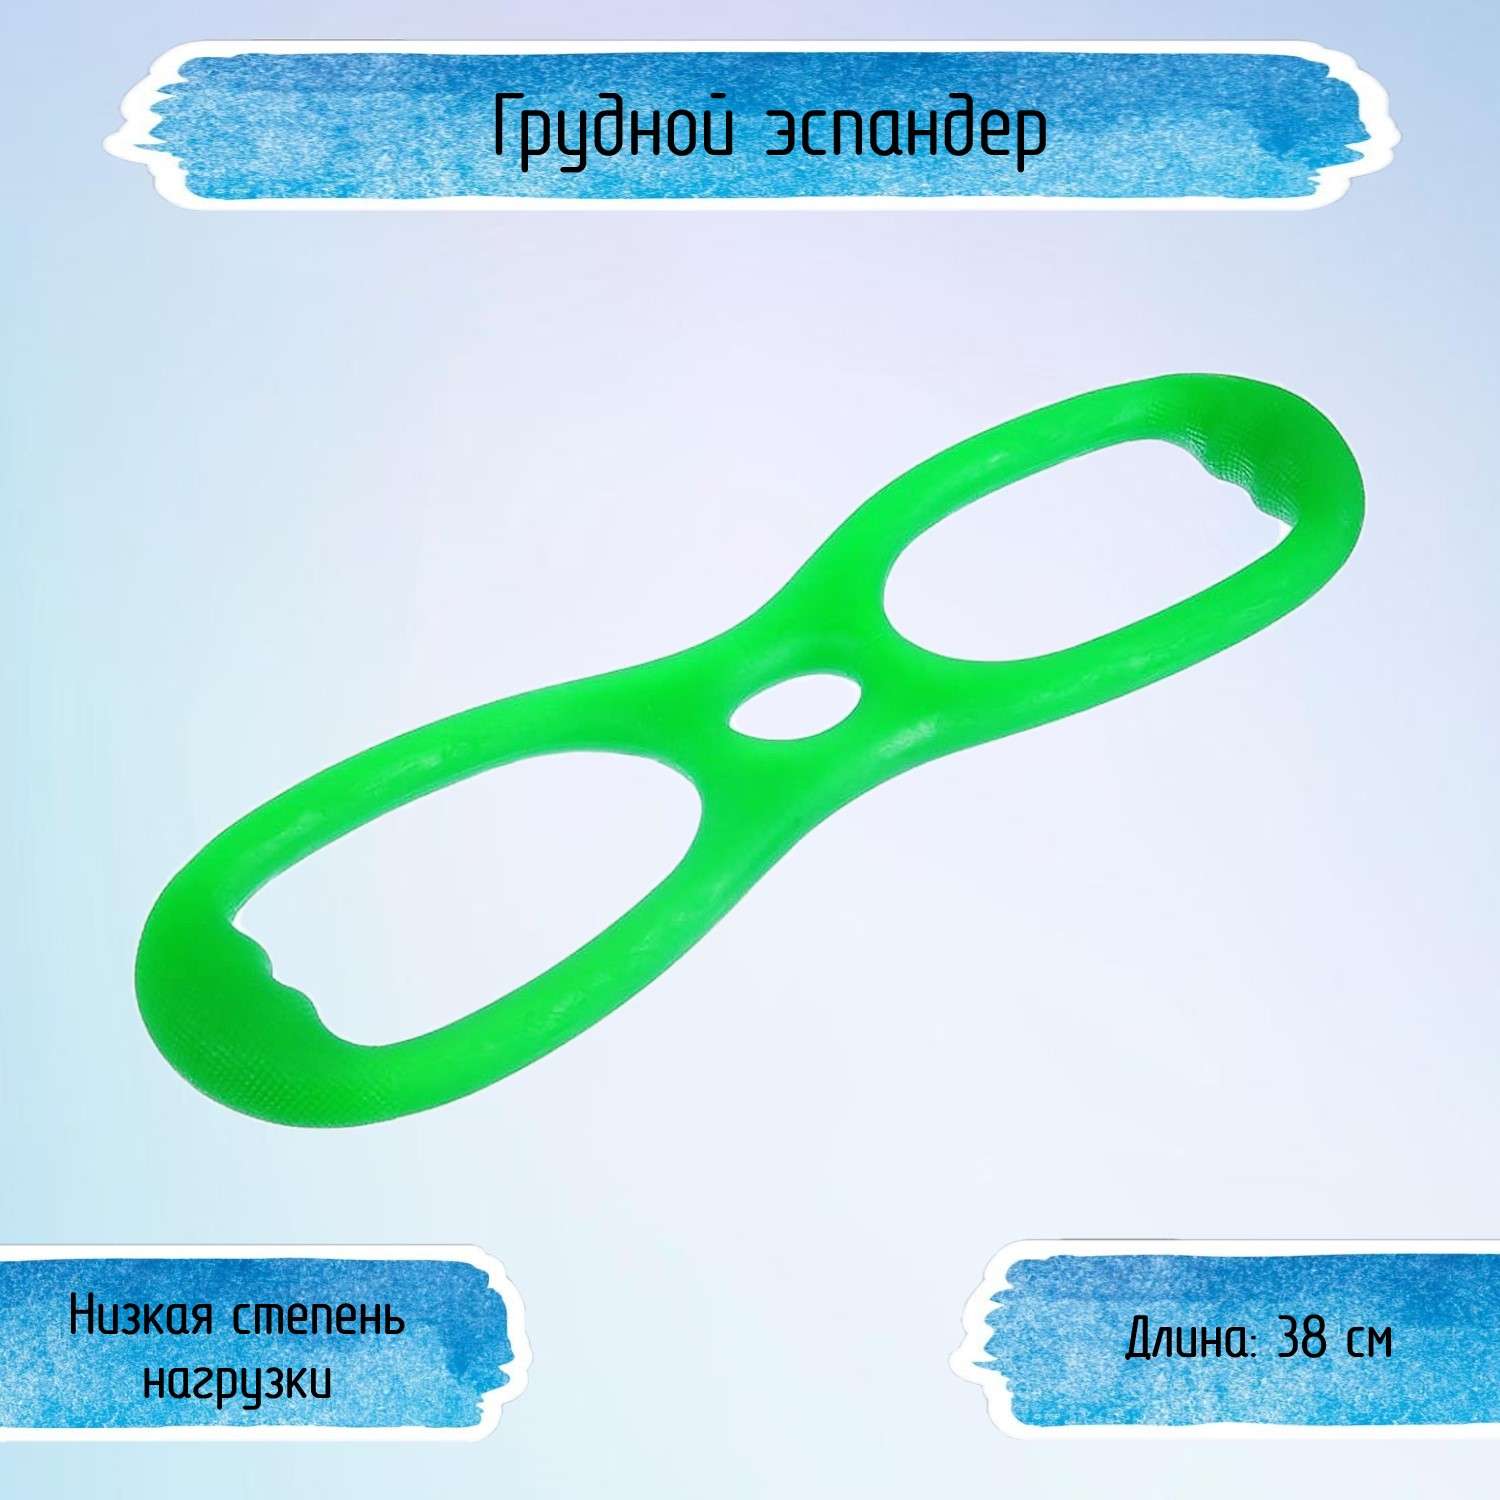 Грудной эспандер Uniglodis Цвет: зеленый - фото 1